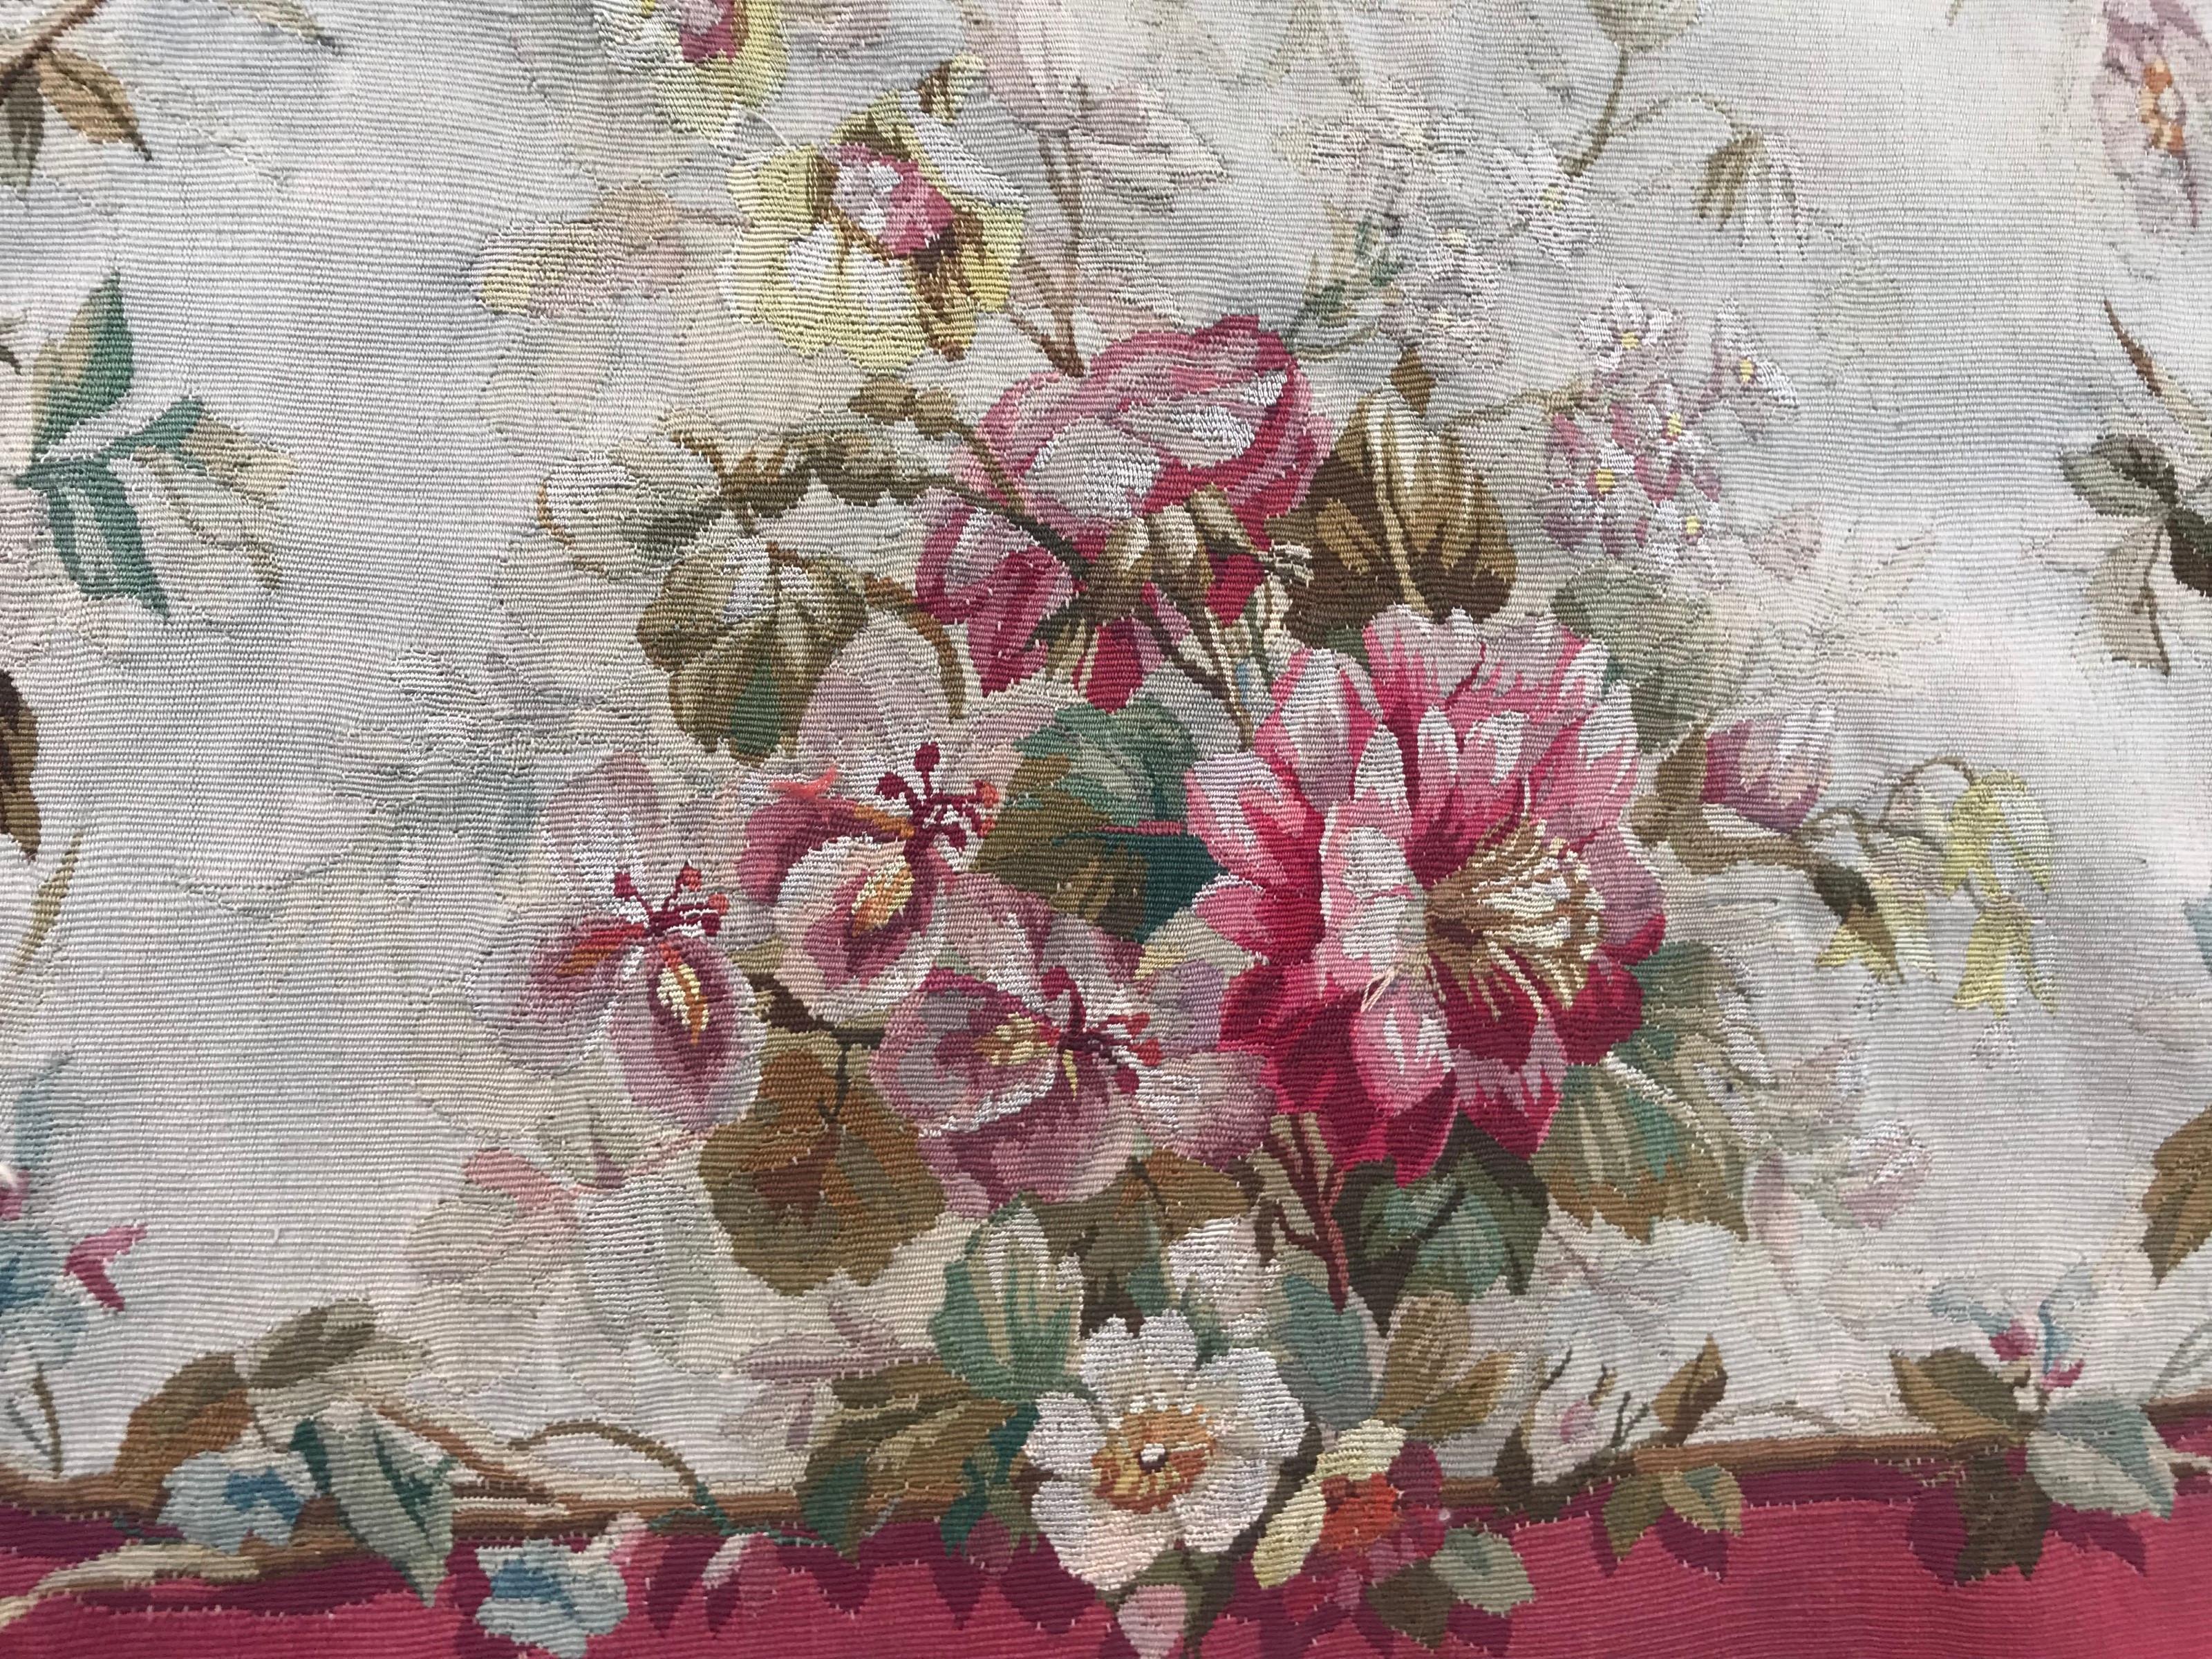 Sehr schöner Aubusson-Wandteppich aus dem späten 19. Jahrhundert mit schönem Muster und Farben, Wolle und Seide auf Baumwollgrund gewebt.